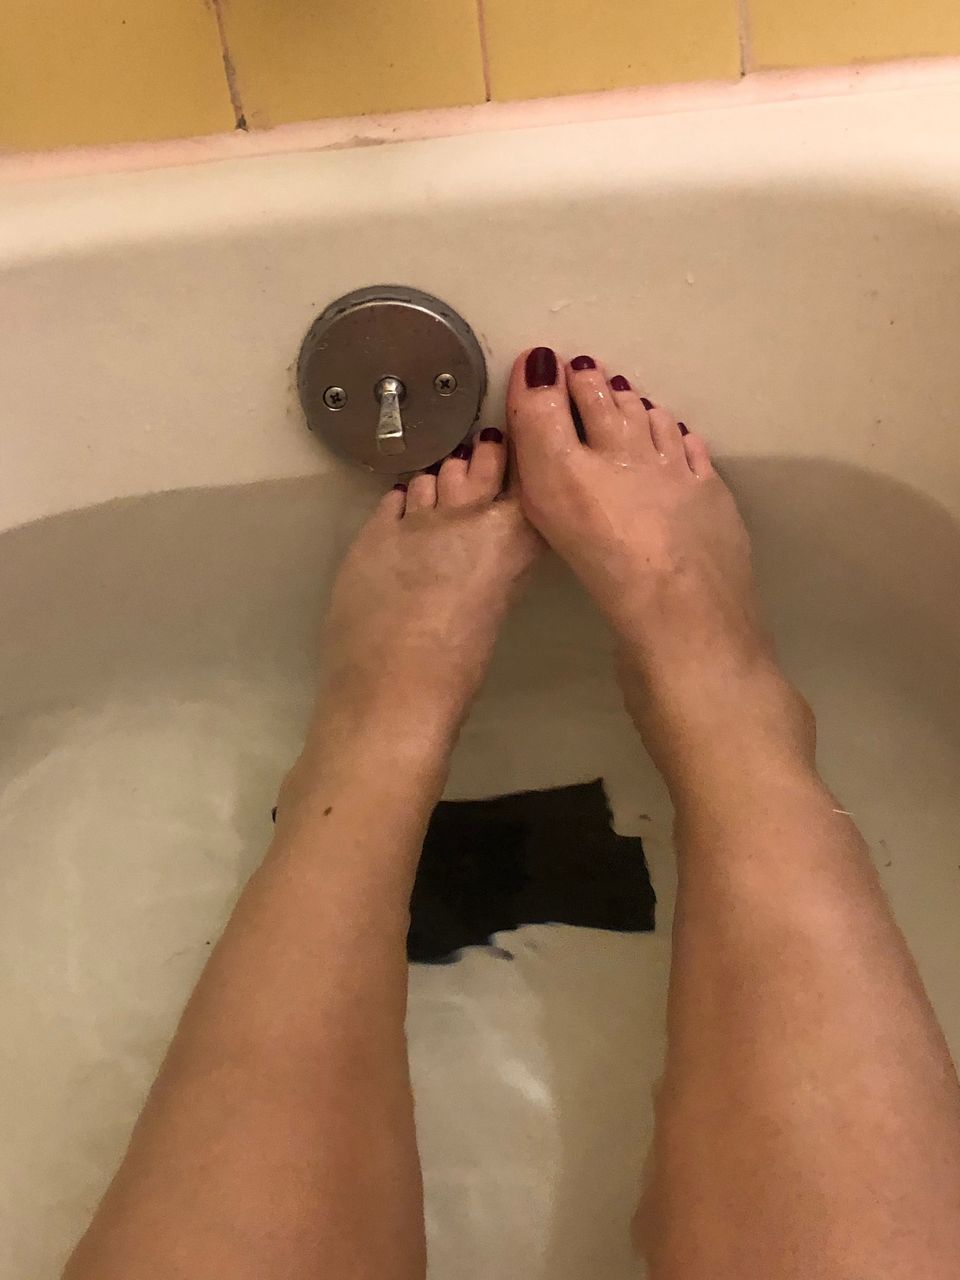 Siriuslove Bath Time